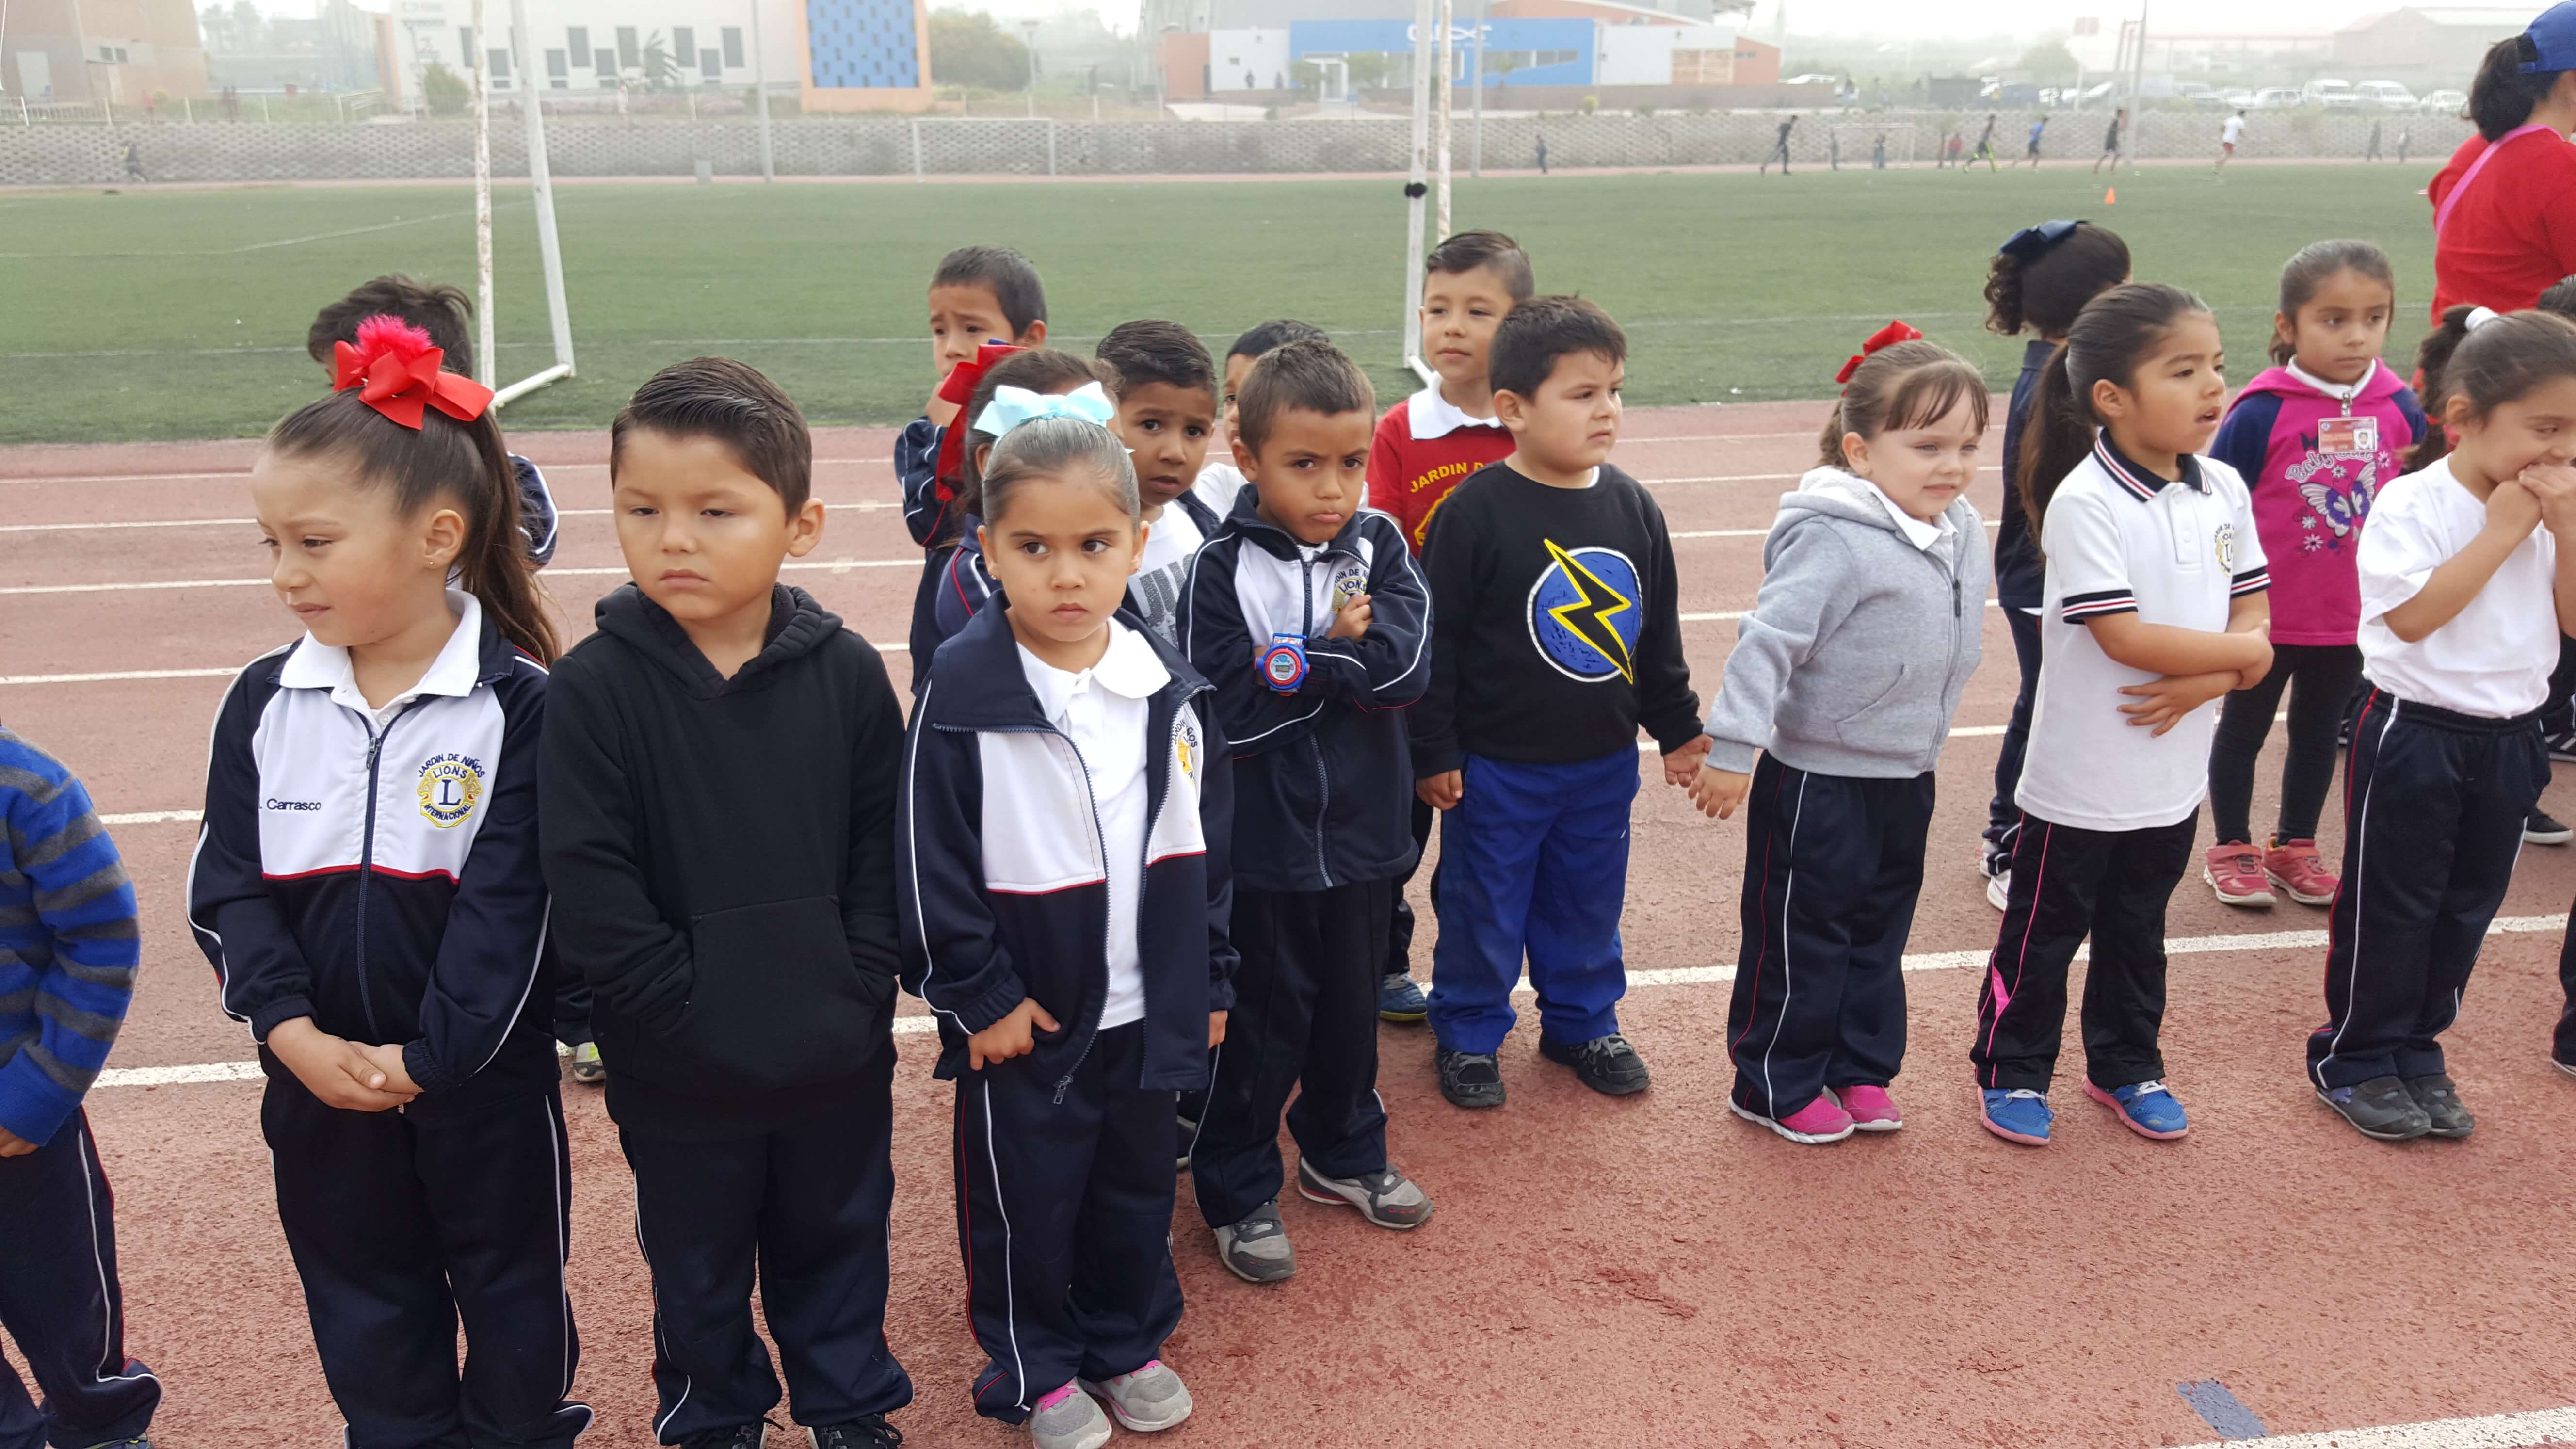 Anuncia IMDER jornadas deportivas “Por la familia“ en escuelas del municipio